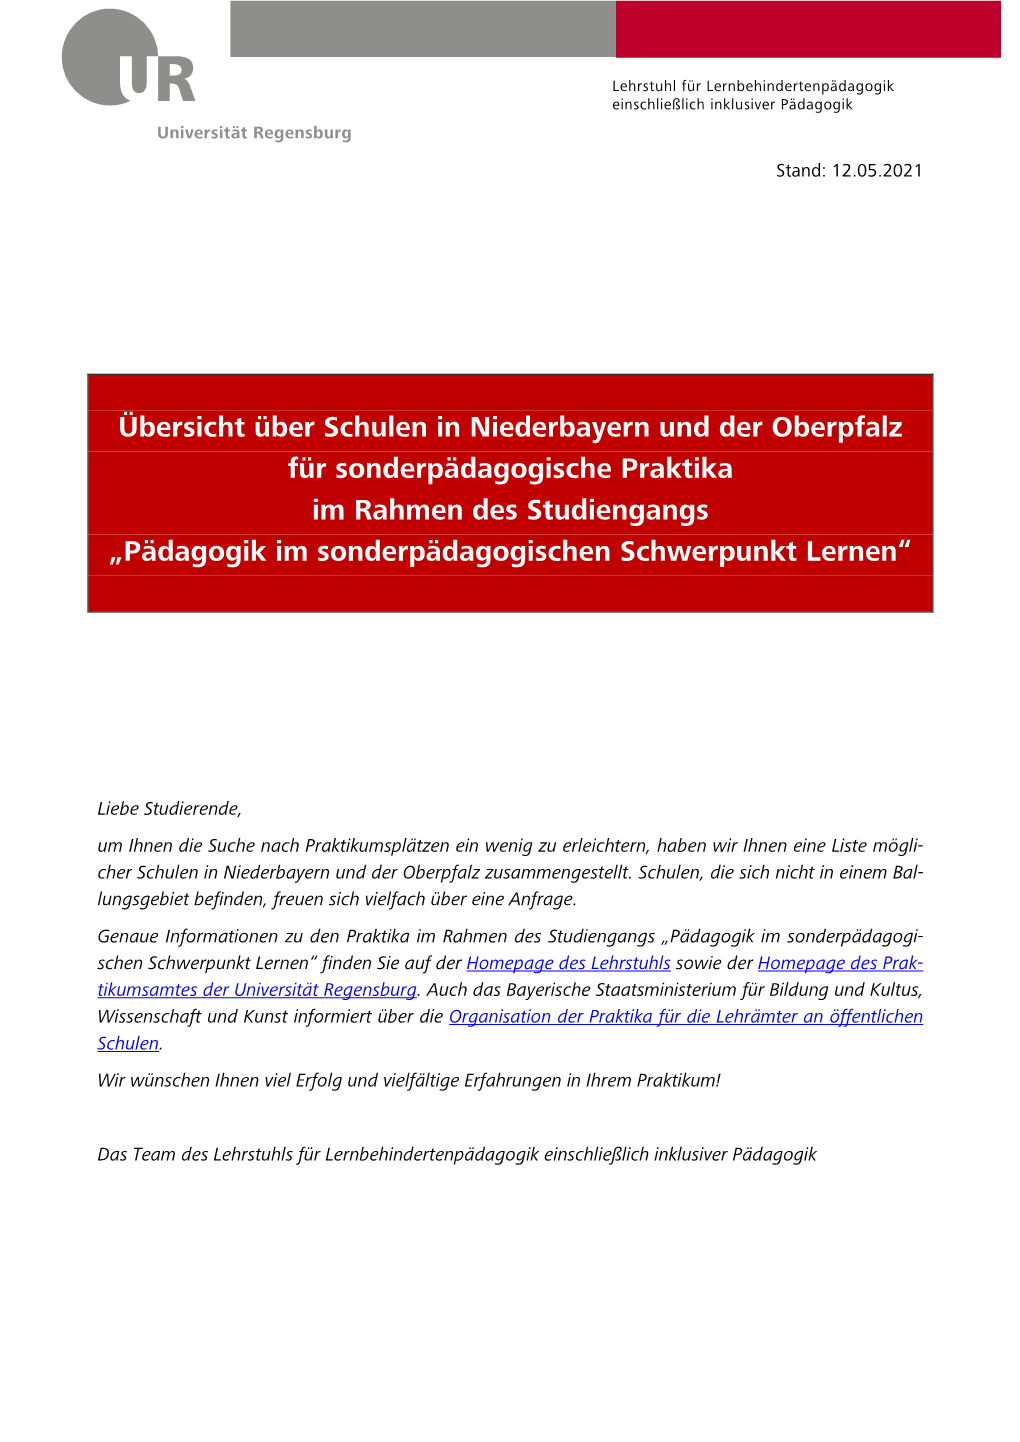 Übersicht Über Schulen in Niederbayern Und Der Oberpfalz Für